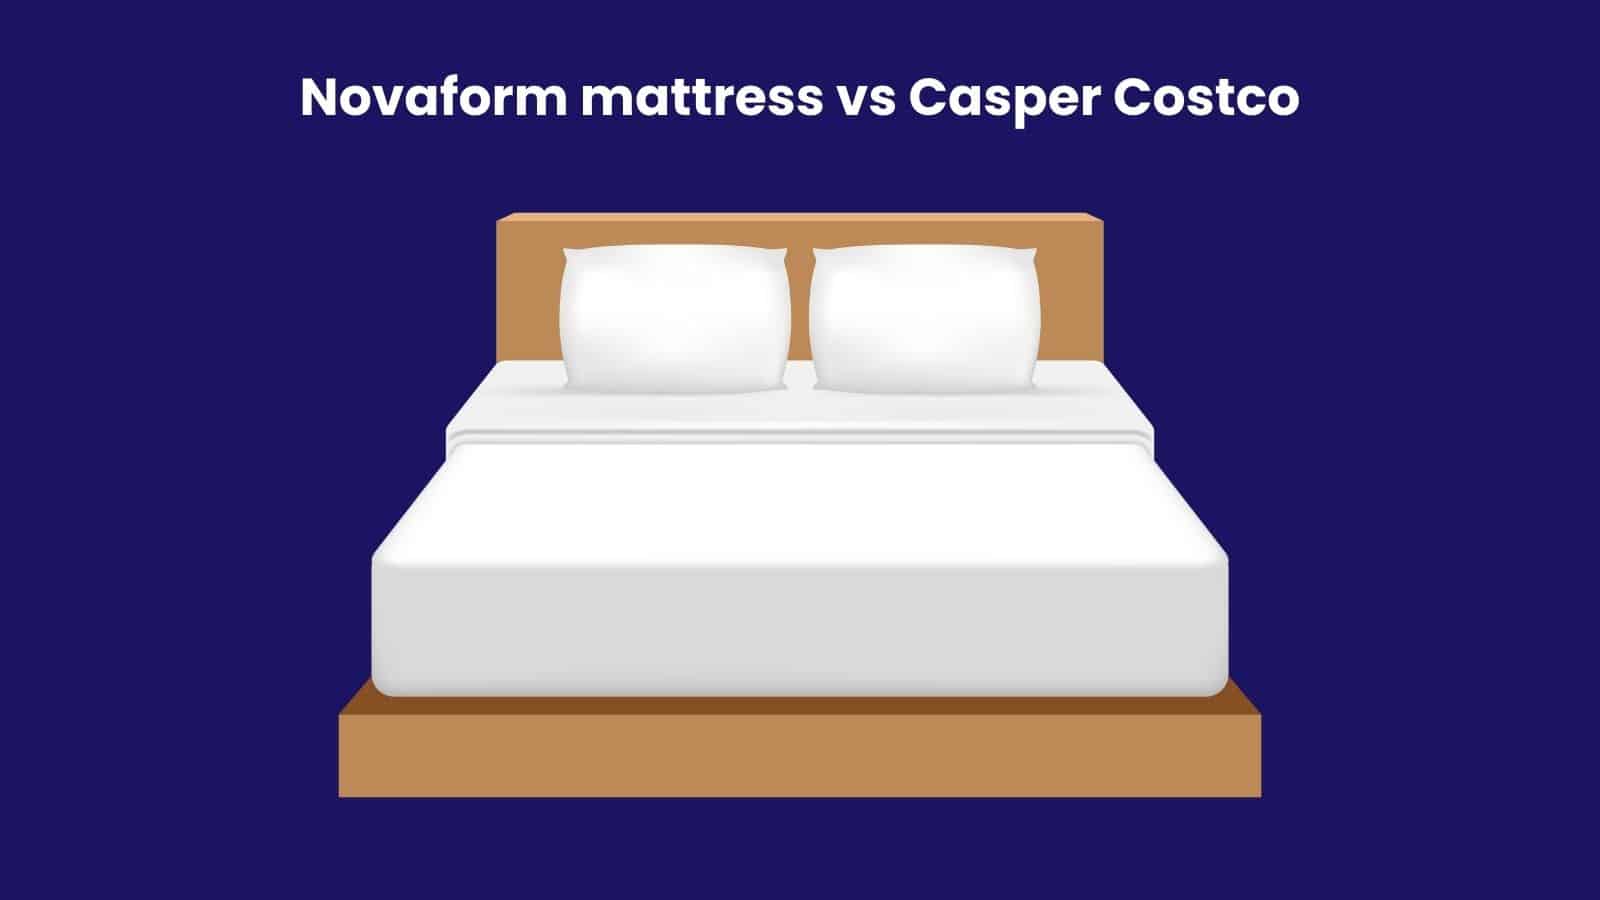 Novaform mattress vs Casper Costco